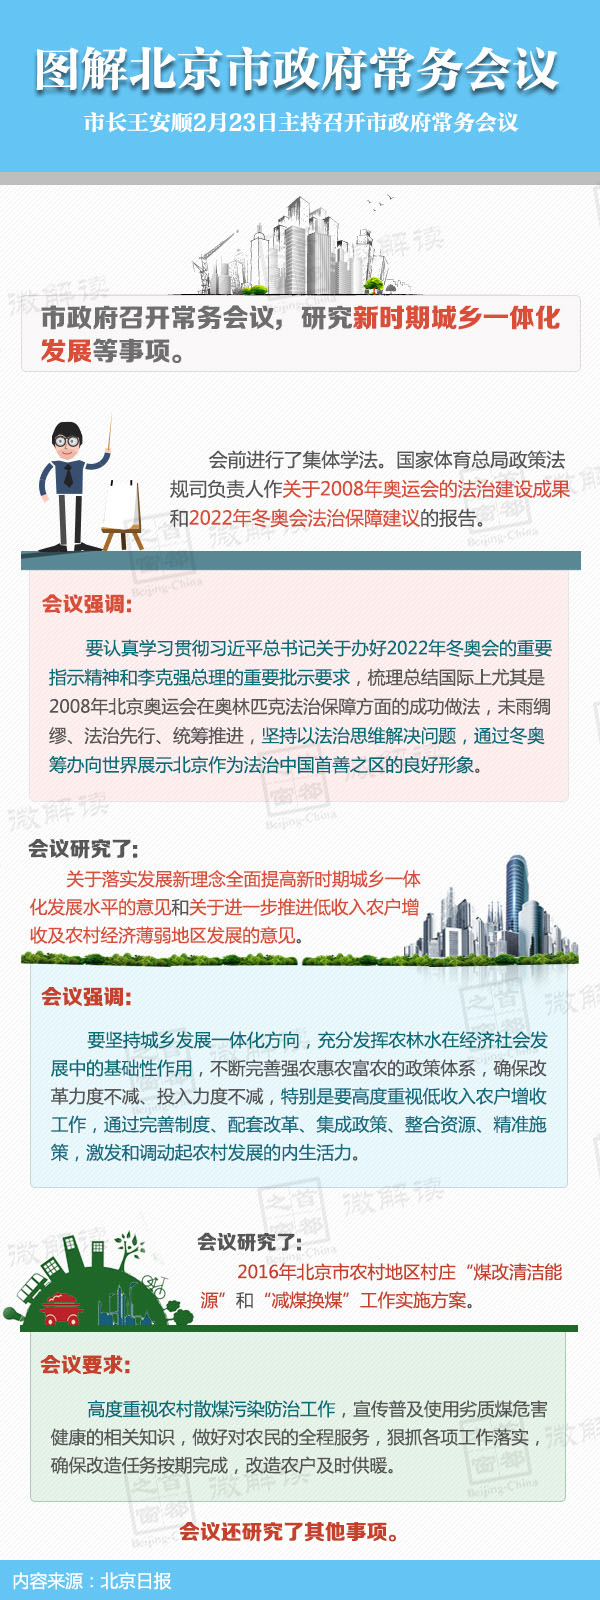 圖解2016年2月23日北京市政府常務會議